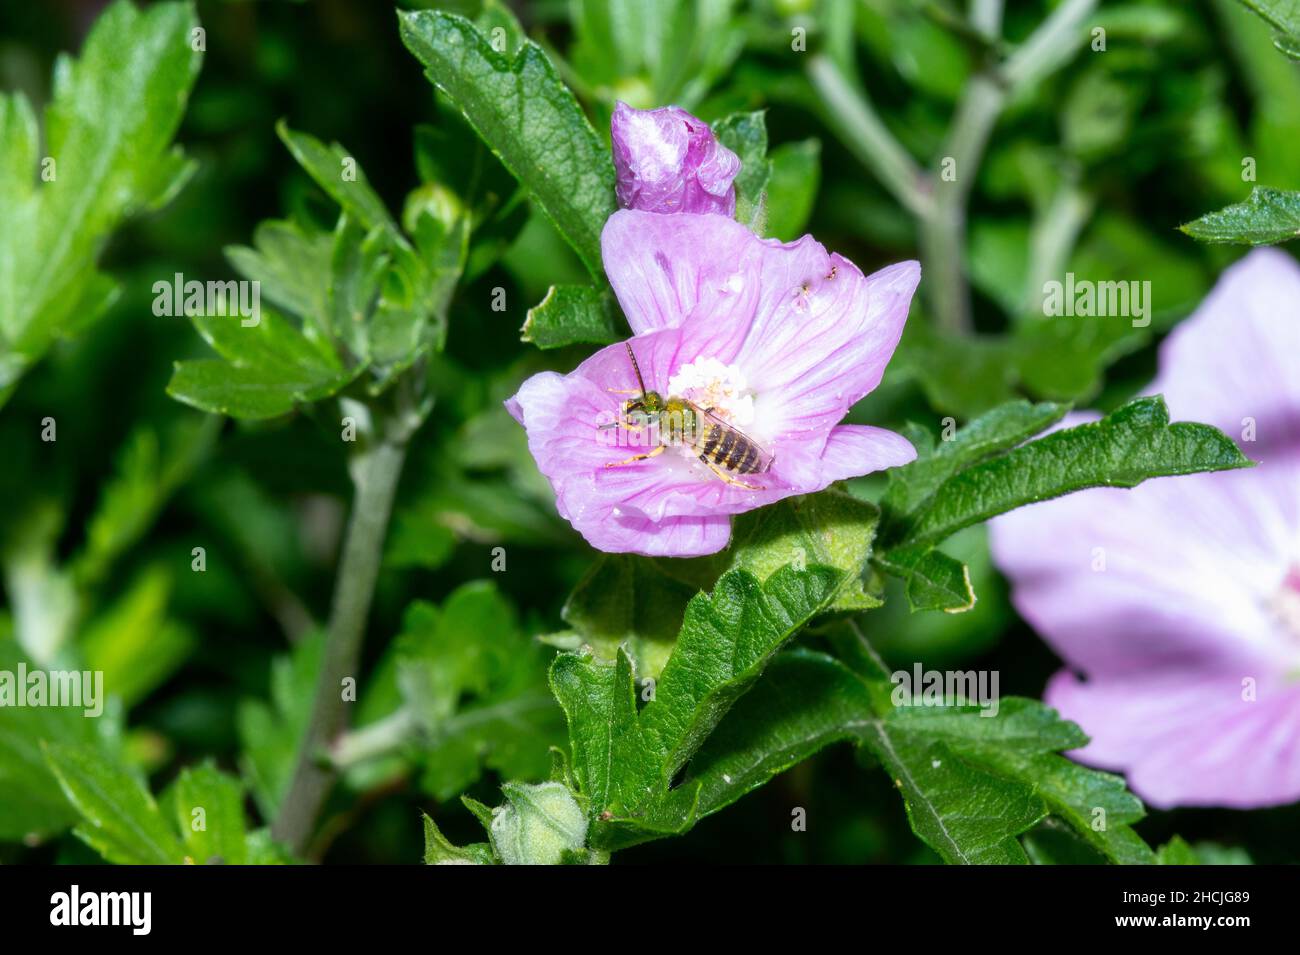 Una abeja verde del sudor (subgénero Agapostemon) busca polen en una flor púrpura Foto de stock